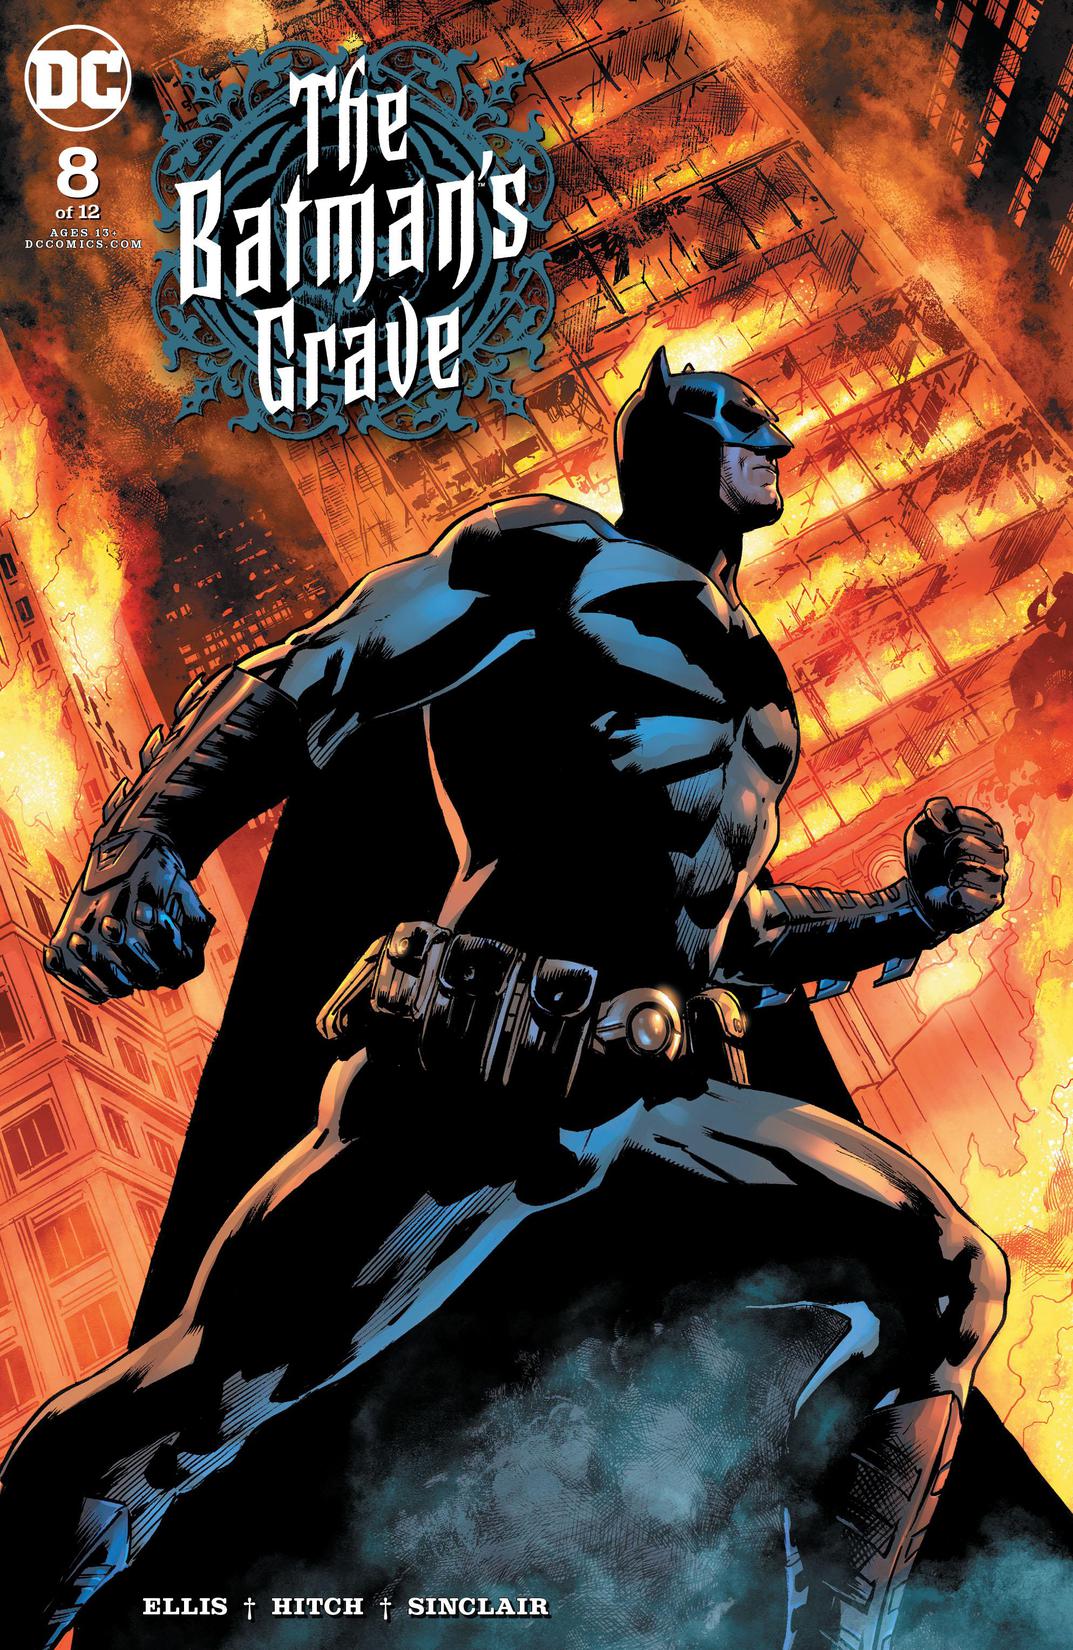 The Batman's Grave #8 preview images